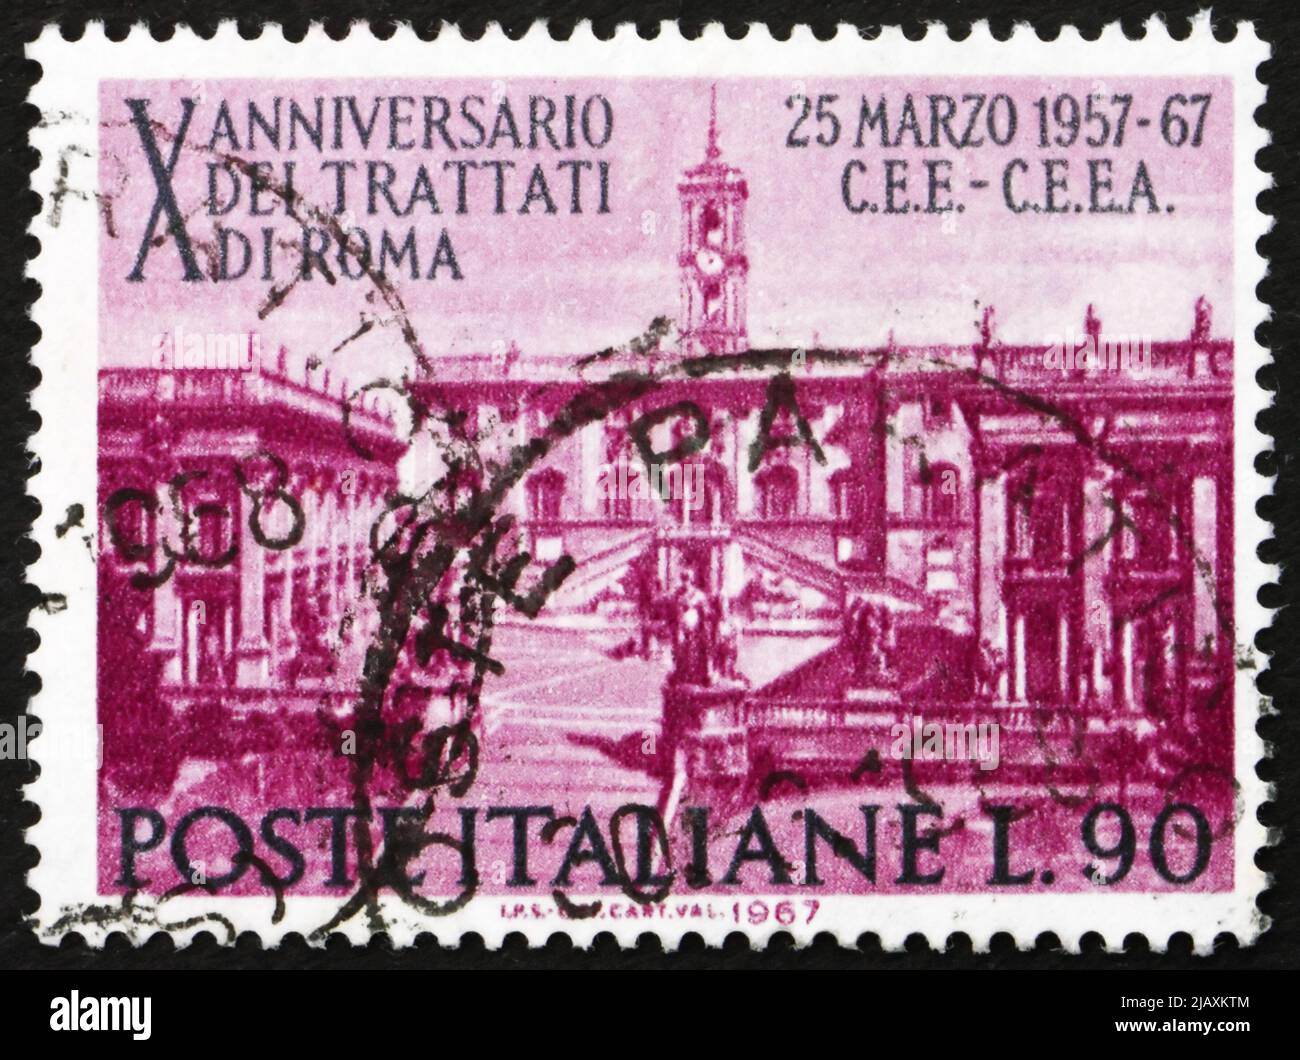 ITALIEN - UM 1967: Eine in Italien gedruckte Briefmarke zeigt den Sitz des Parlaments auf dem Kapitol, Rom, 10. des Vertrags von Rom, der den Europ festlegt Stockfoto